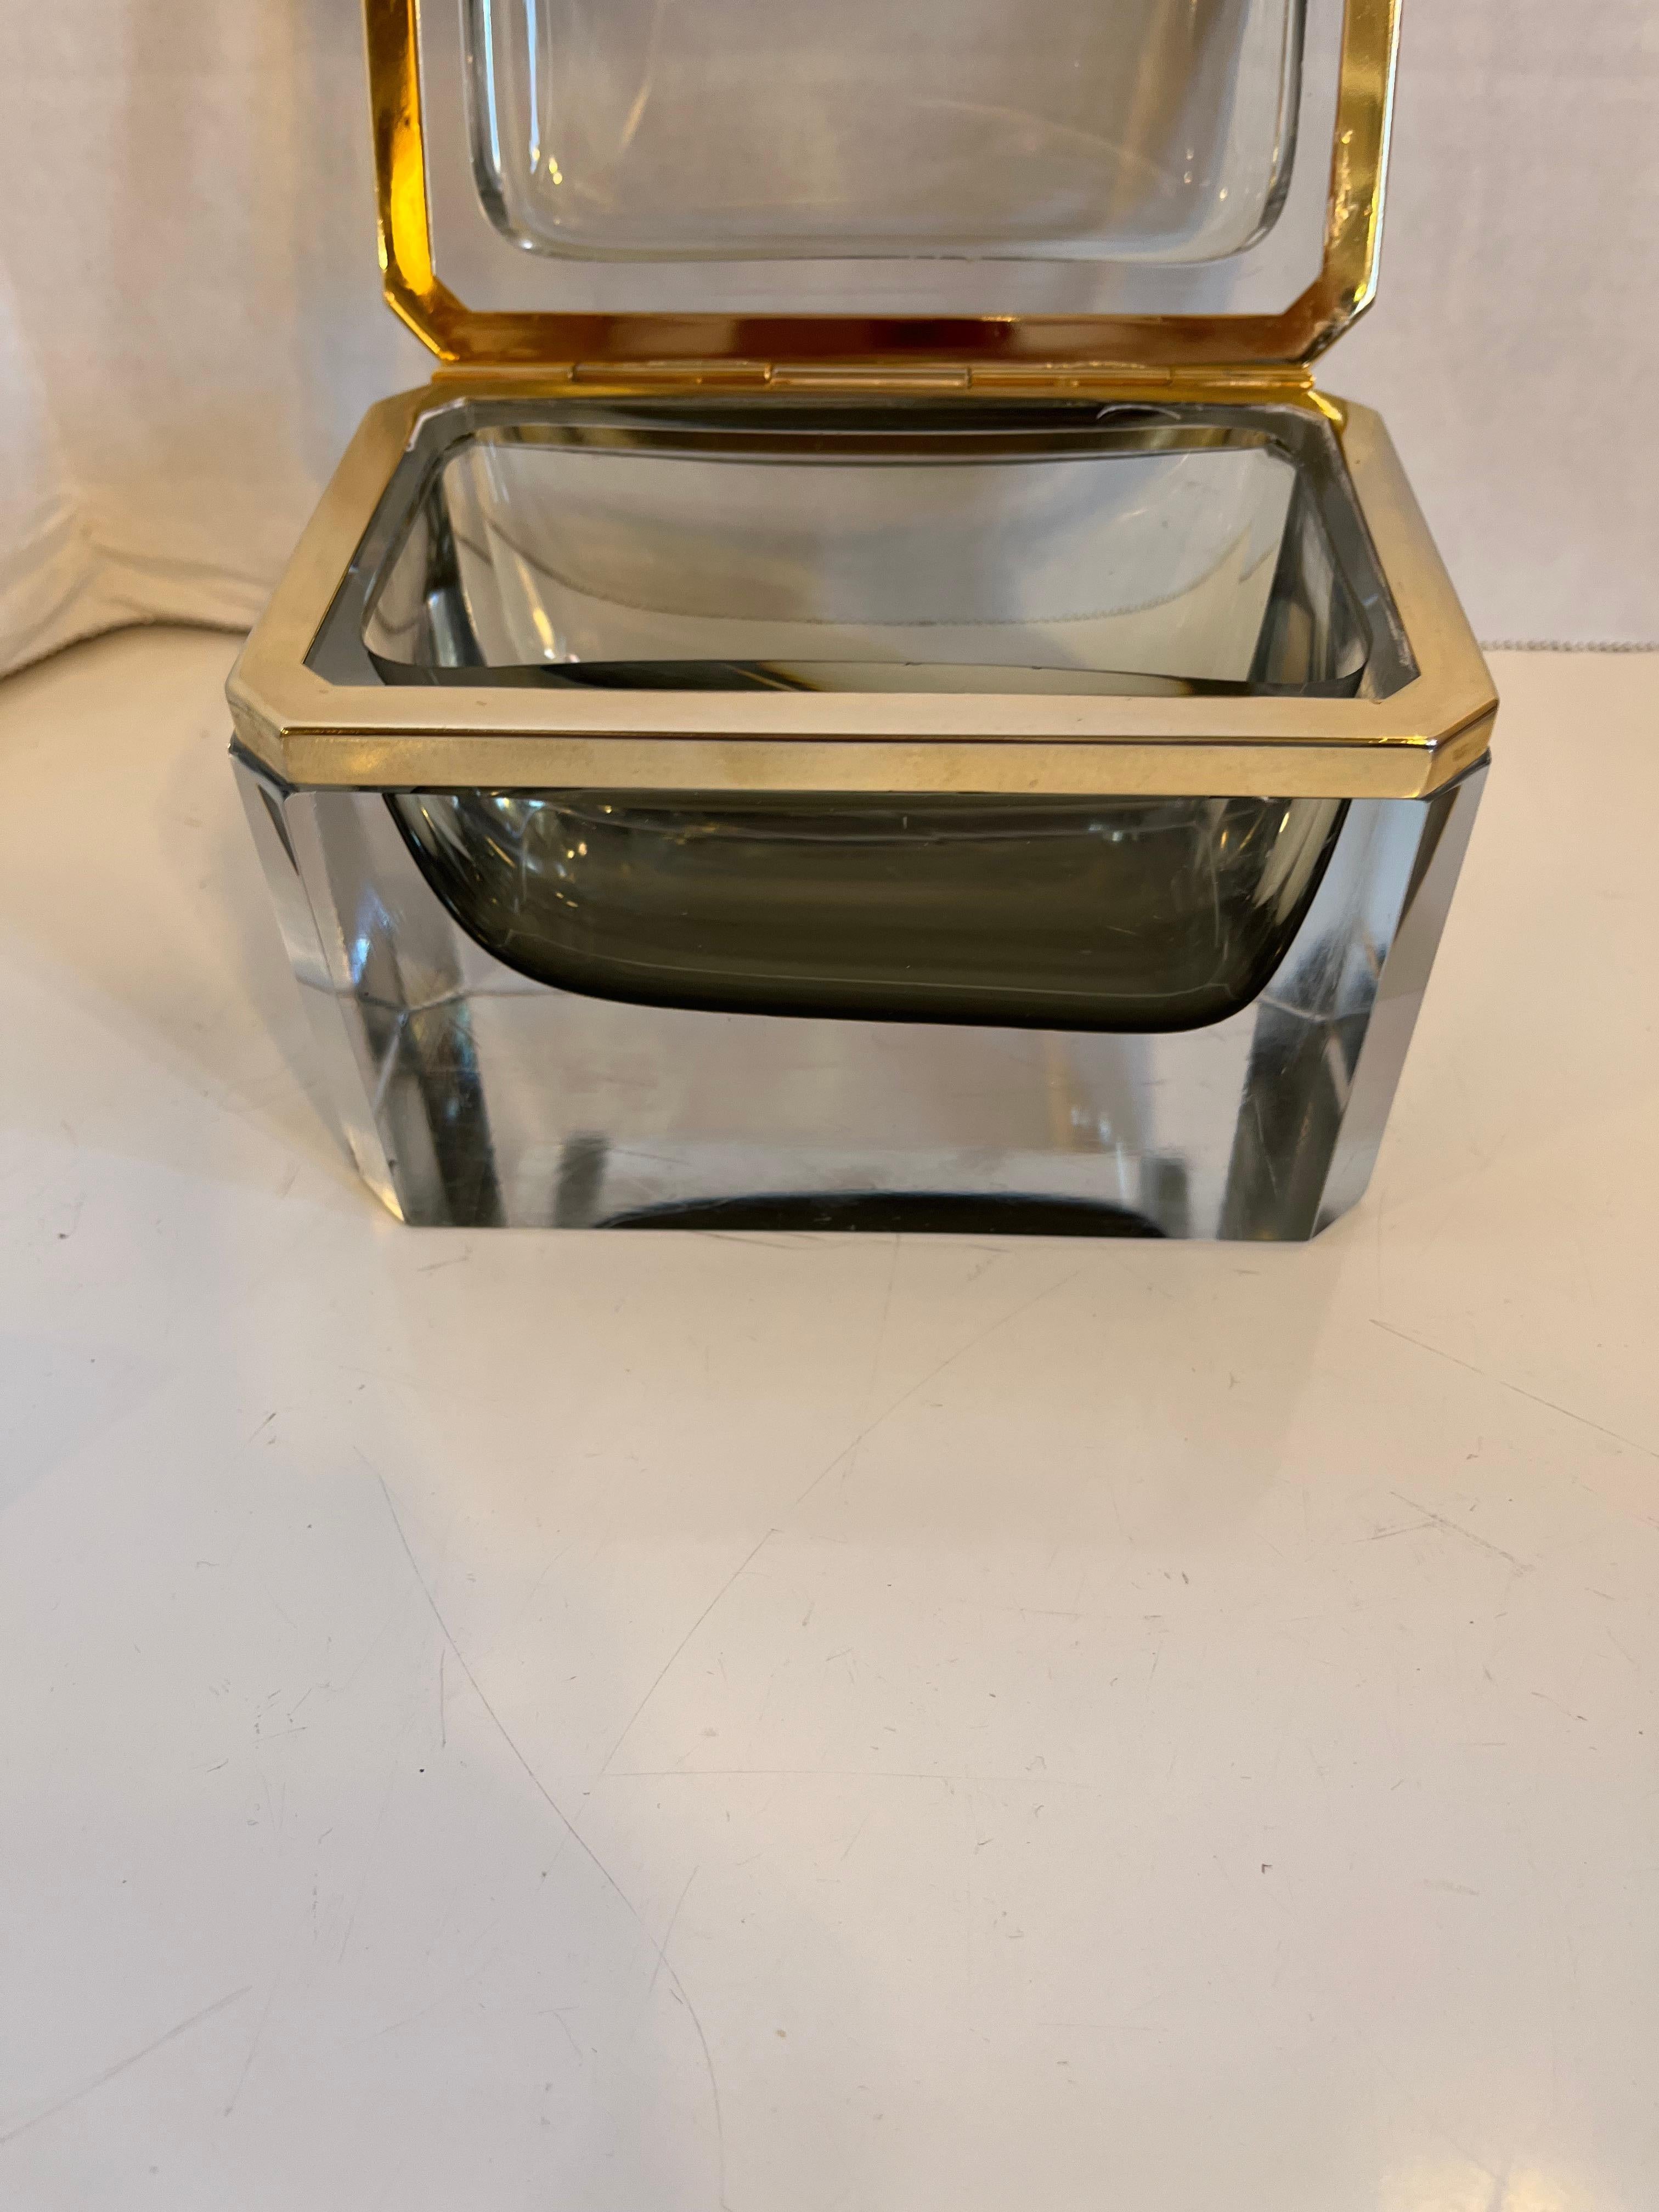 Remarquable cercueil vintage en verre de Murano épais et transparent, monté en bronze, attribué à Sommerso, avec un intérieur en verre fumé.